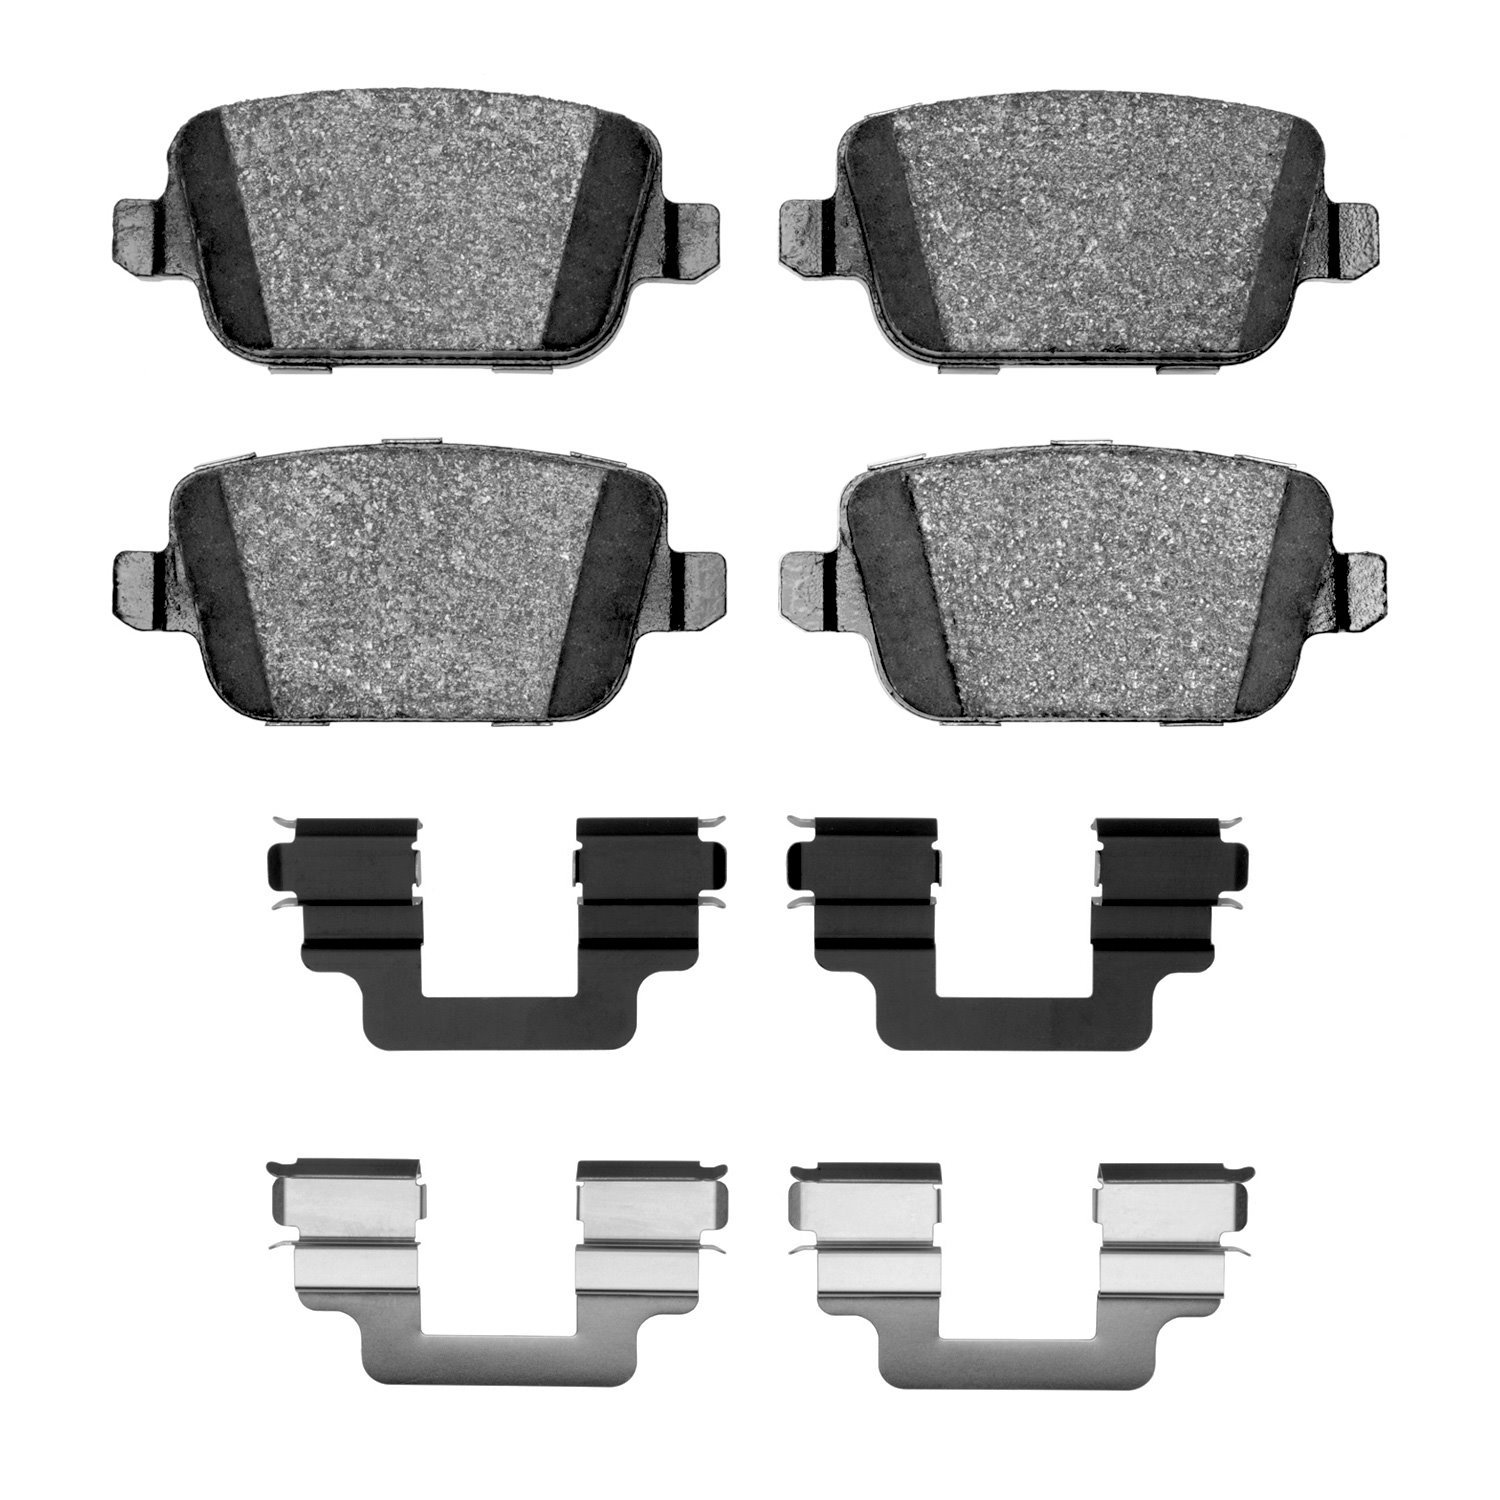 1310-1314-02 3000-Series Ceramic Brake Pads & Hardware Kit, 2008-2012 Land Rover, Position: Rear